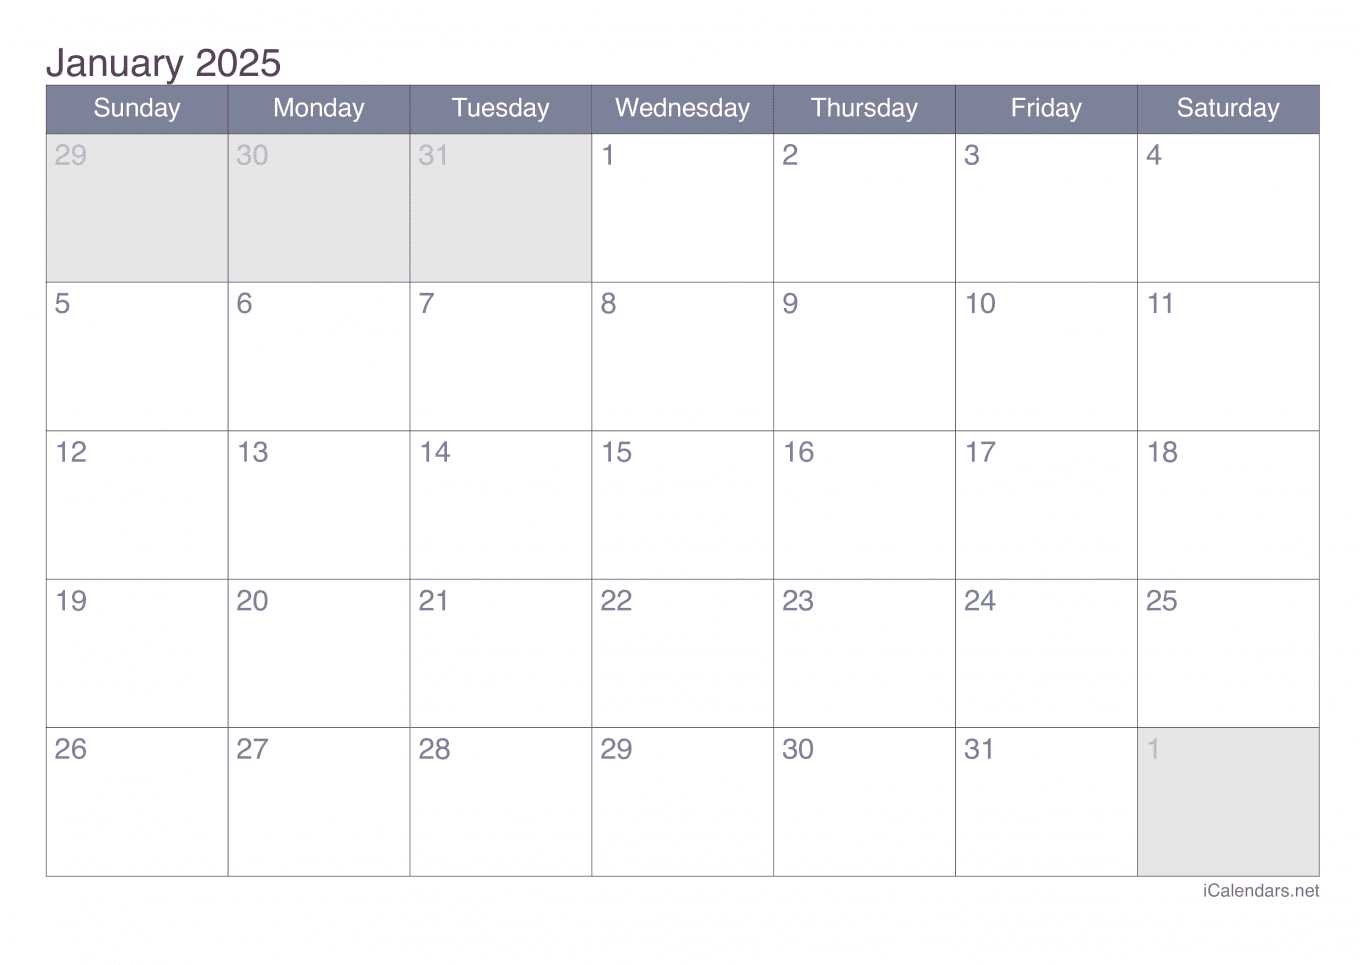 2025 January Calendar - Office